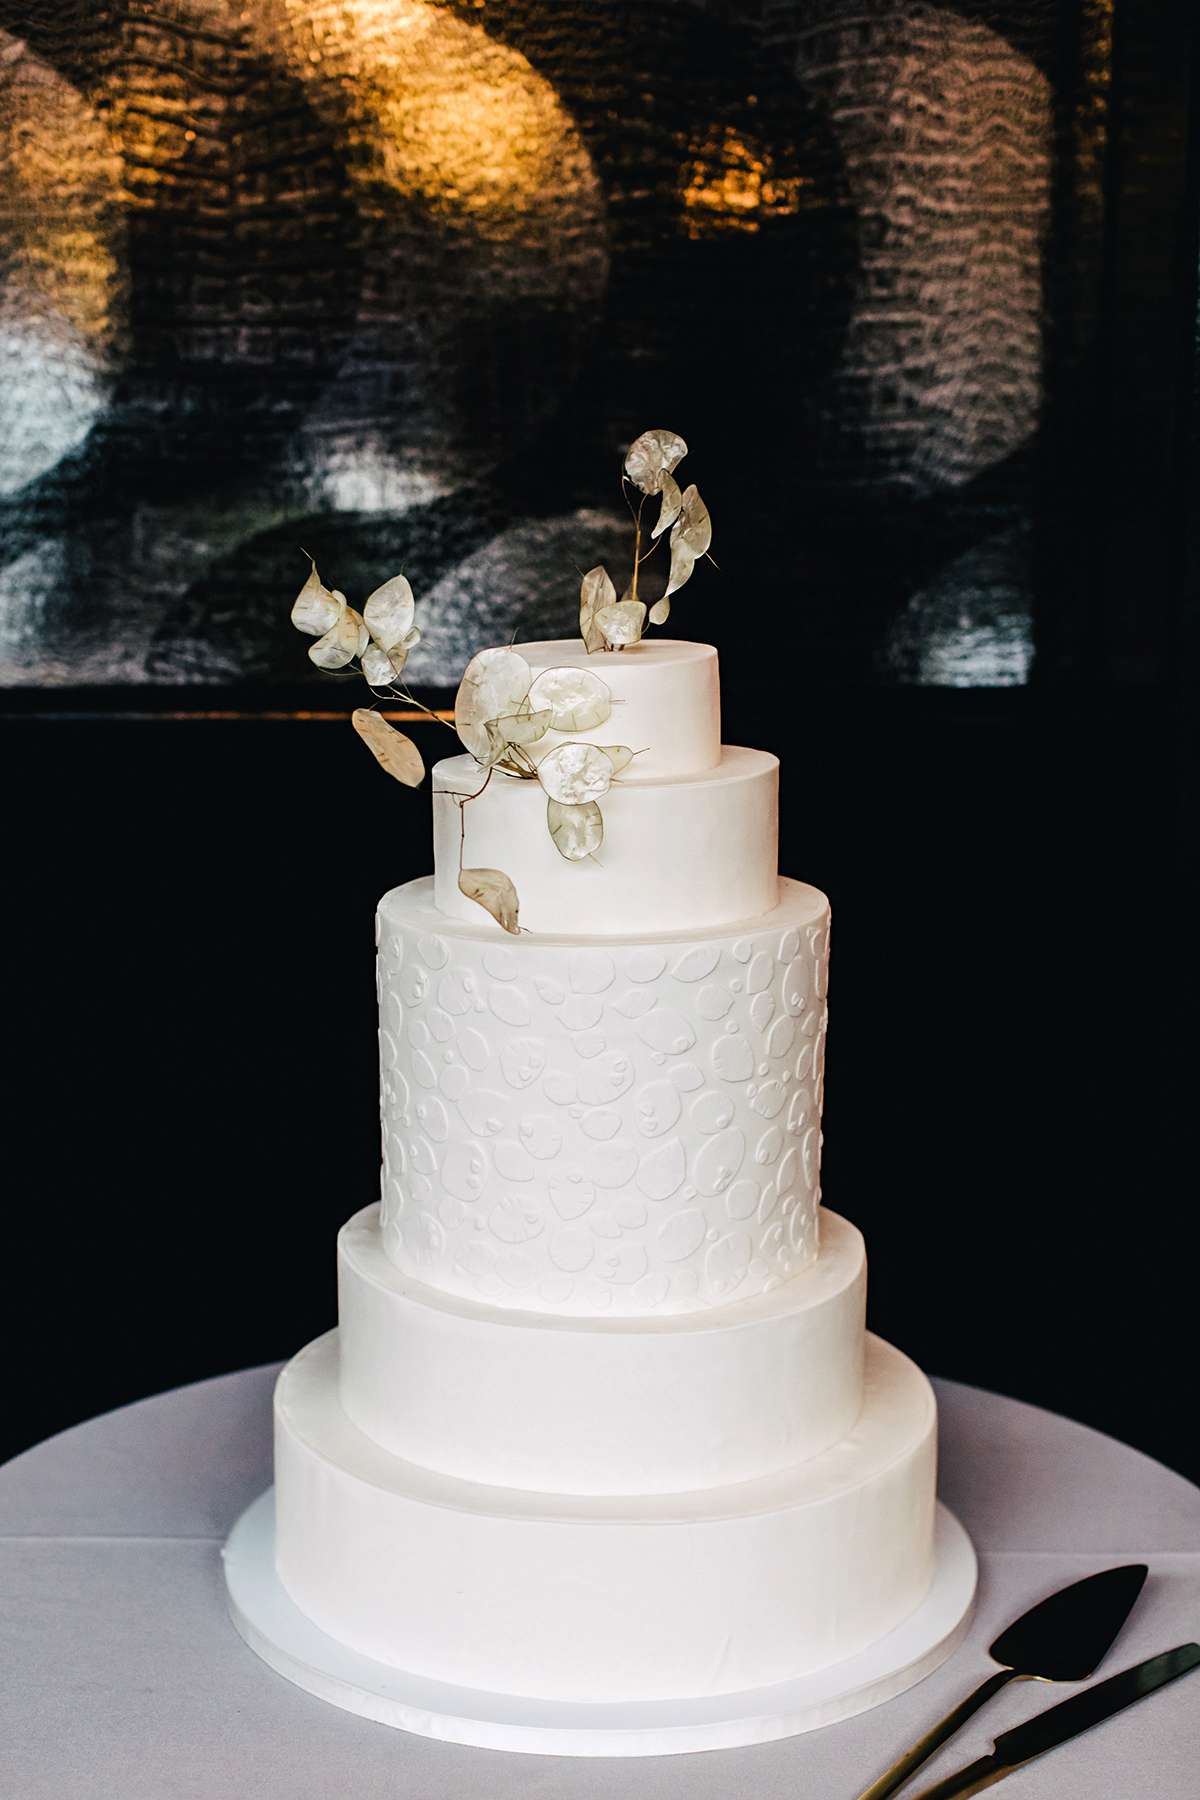 ana and damon simple wedding cake